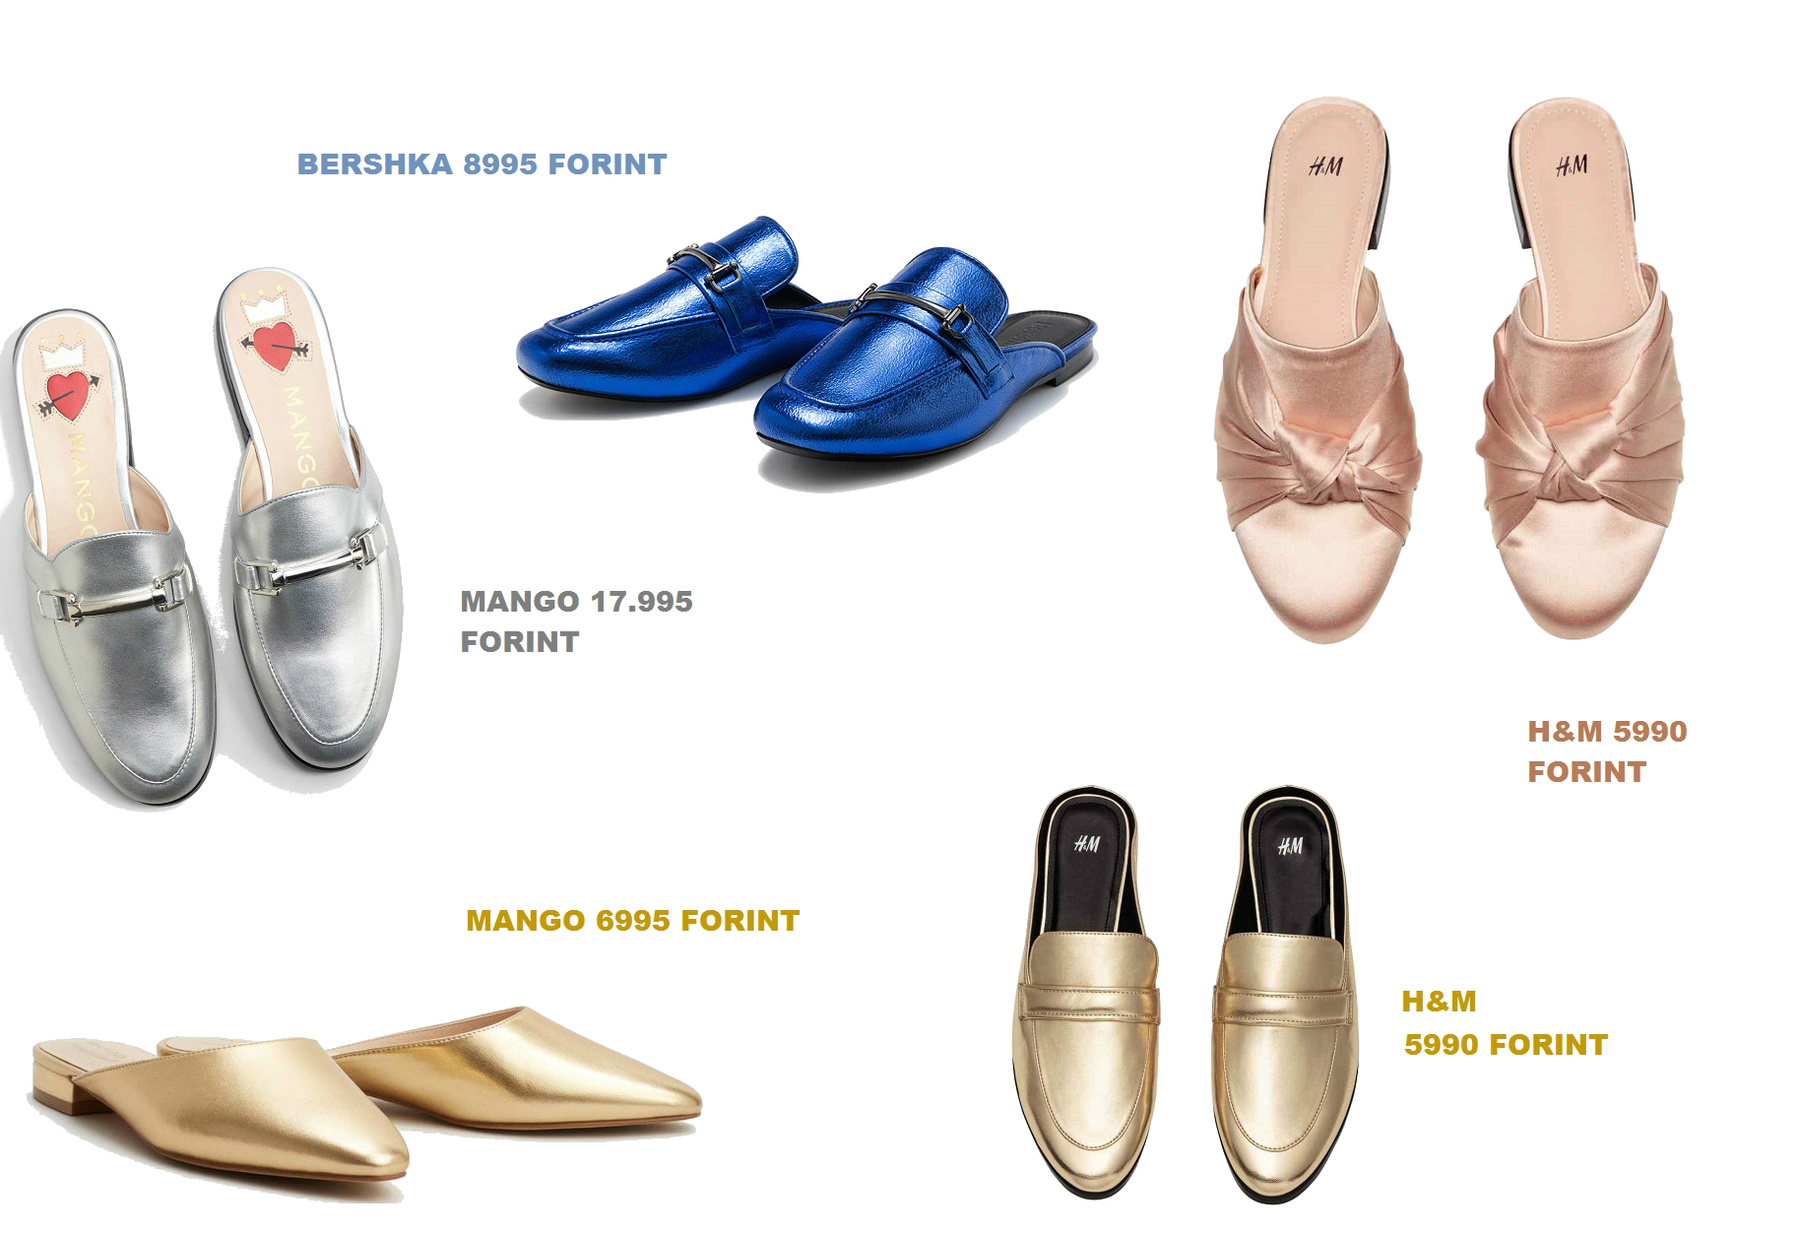 És hogy ne csak a fast fashion verziók álljanak itt, ahnem Alessandro Michele munkája is: Gucci papucscipők 164 és 263 ezer forint közötti áron.